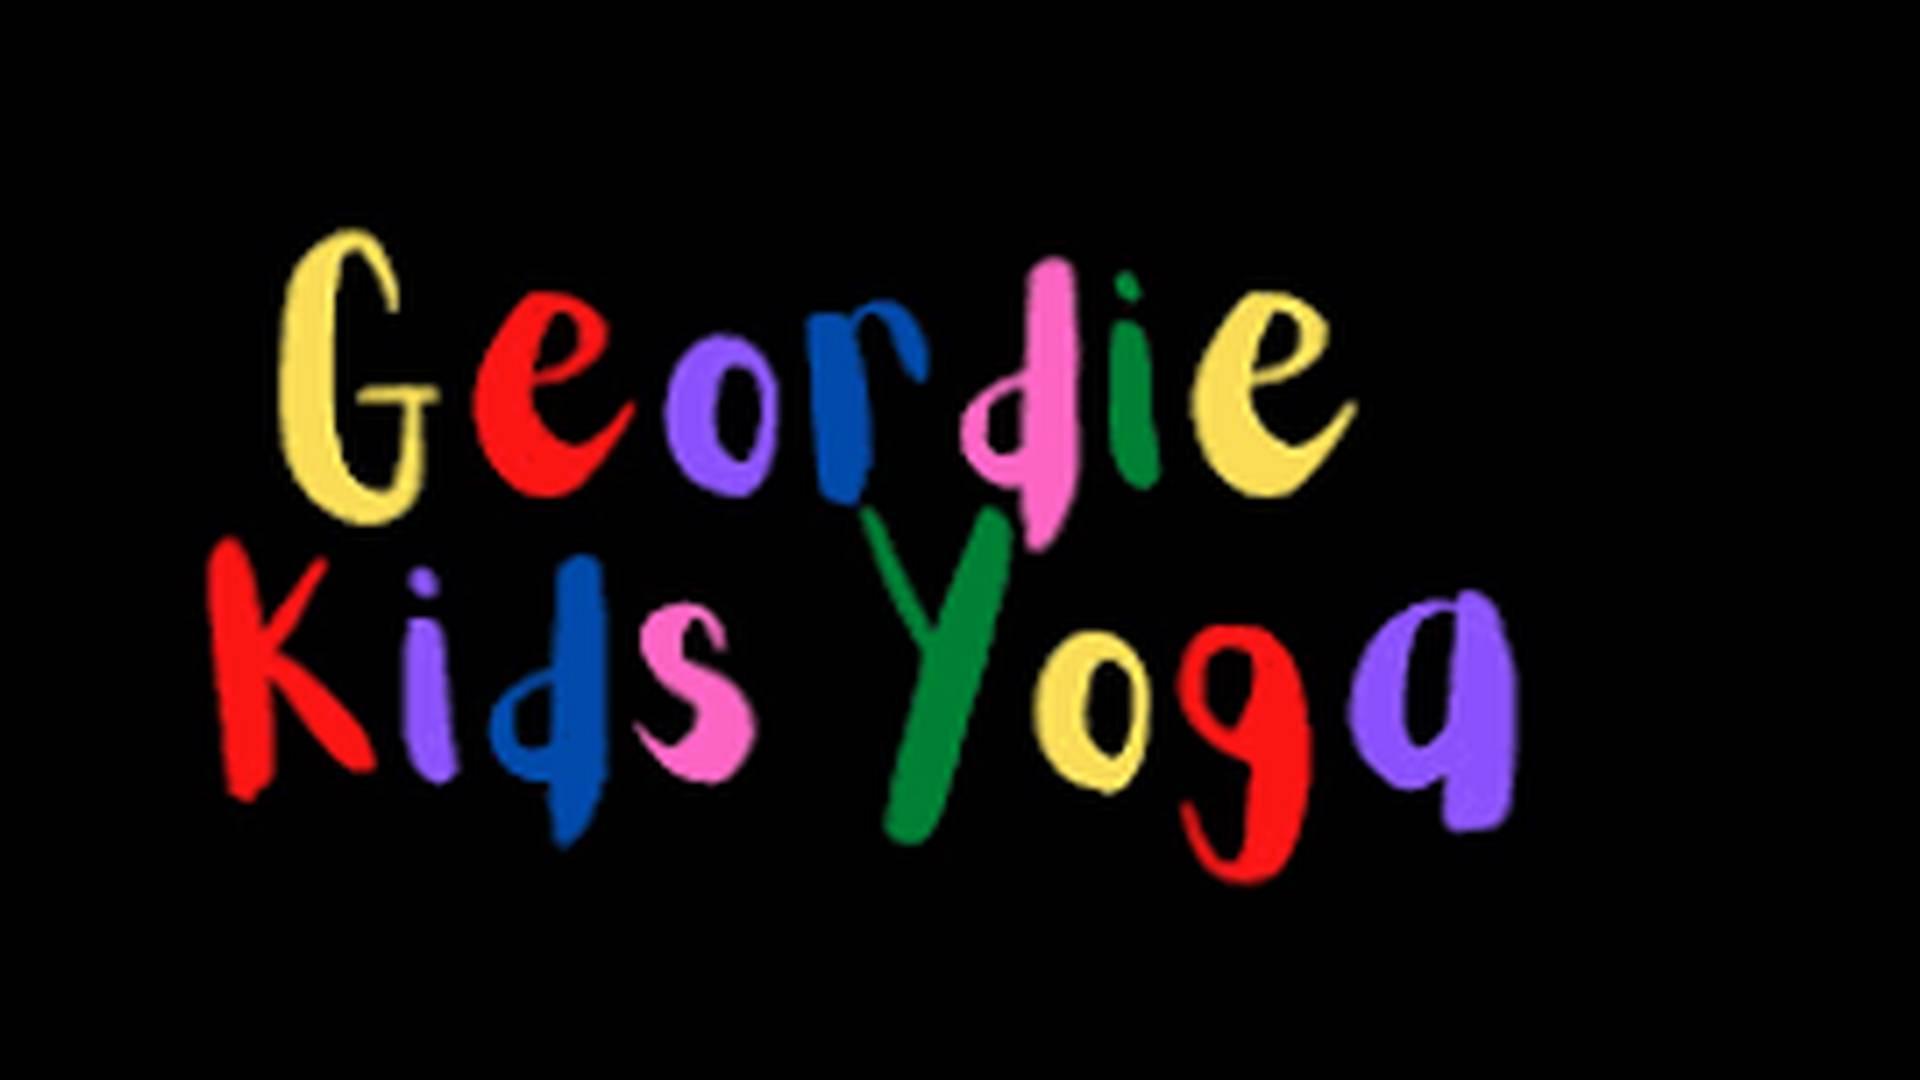 Geordie Kids Yoga photo